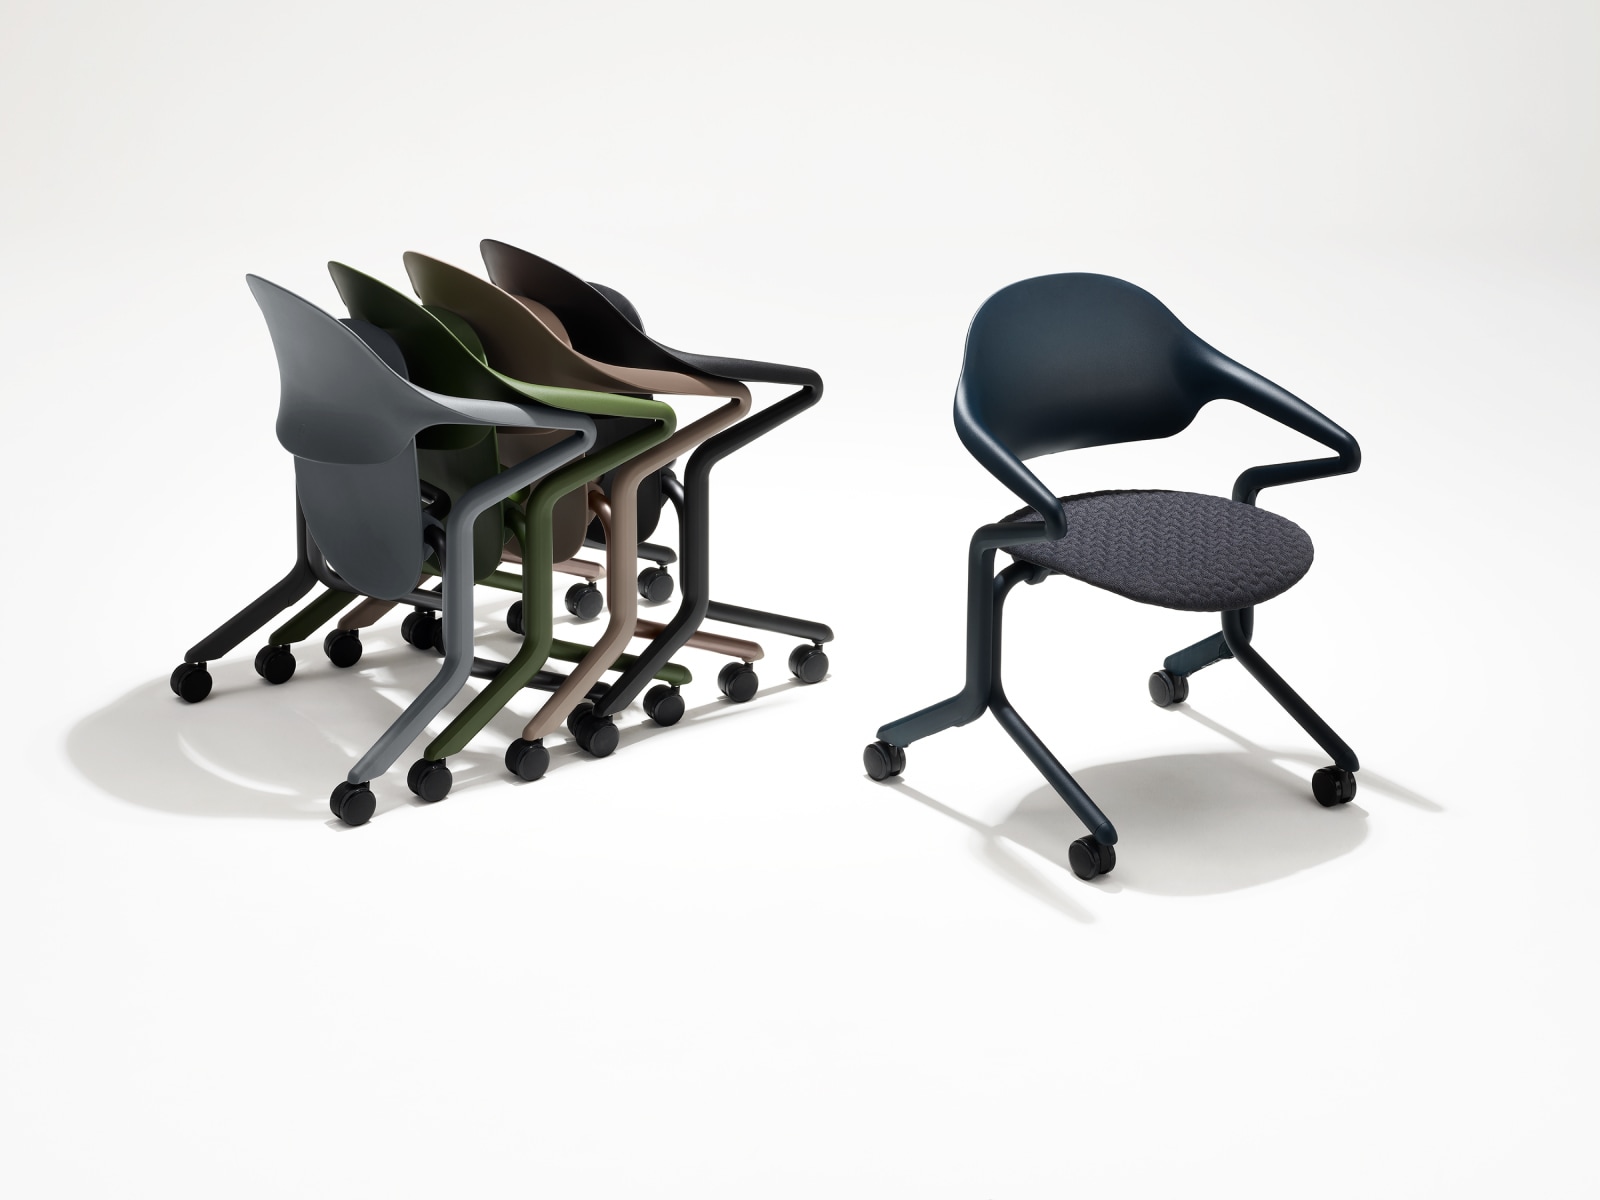 Cuatro sillas nido Fuld en varios colores y acabados anidadas en grupo junto a una única silla nido Fuld en color Nightfall con el textil 3D.